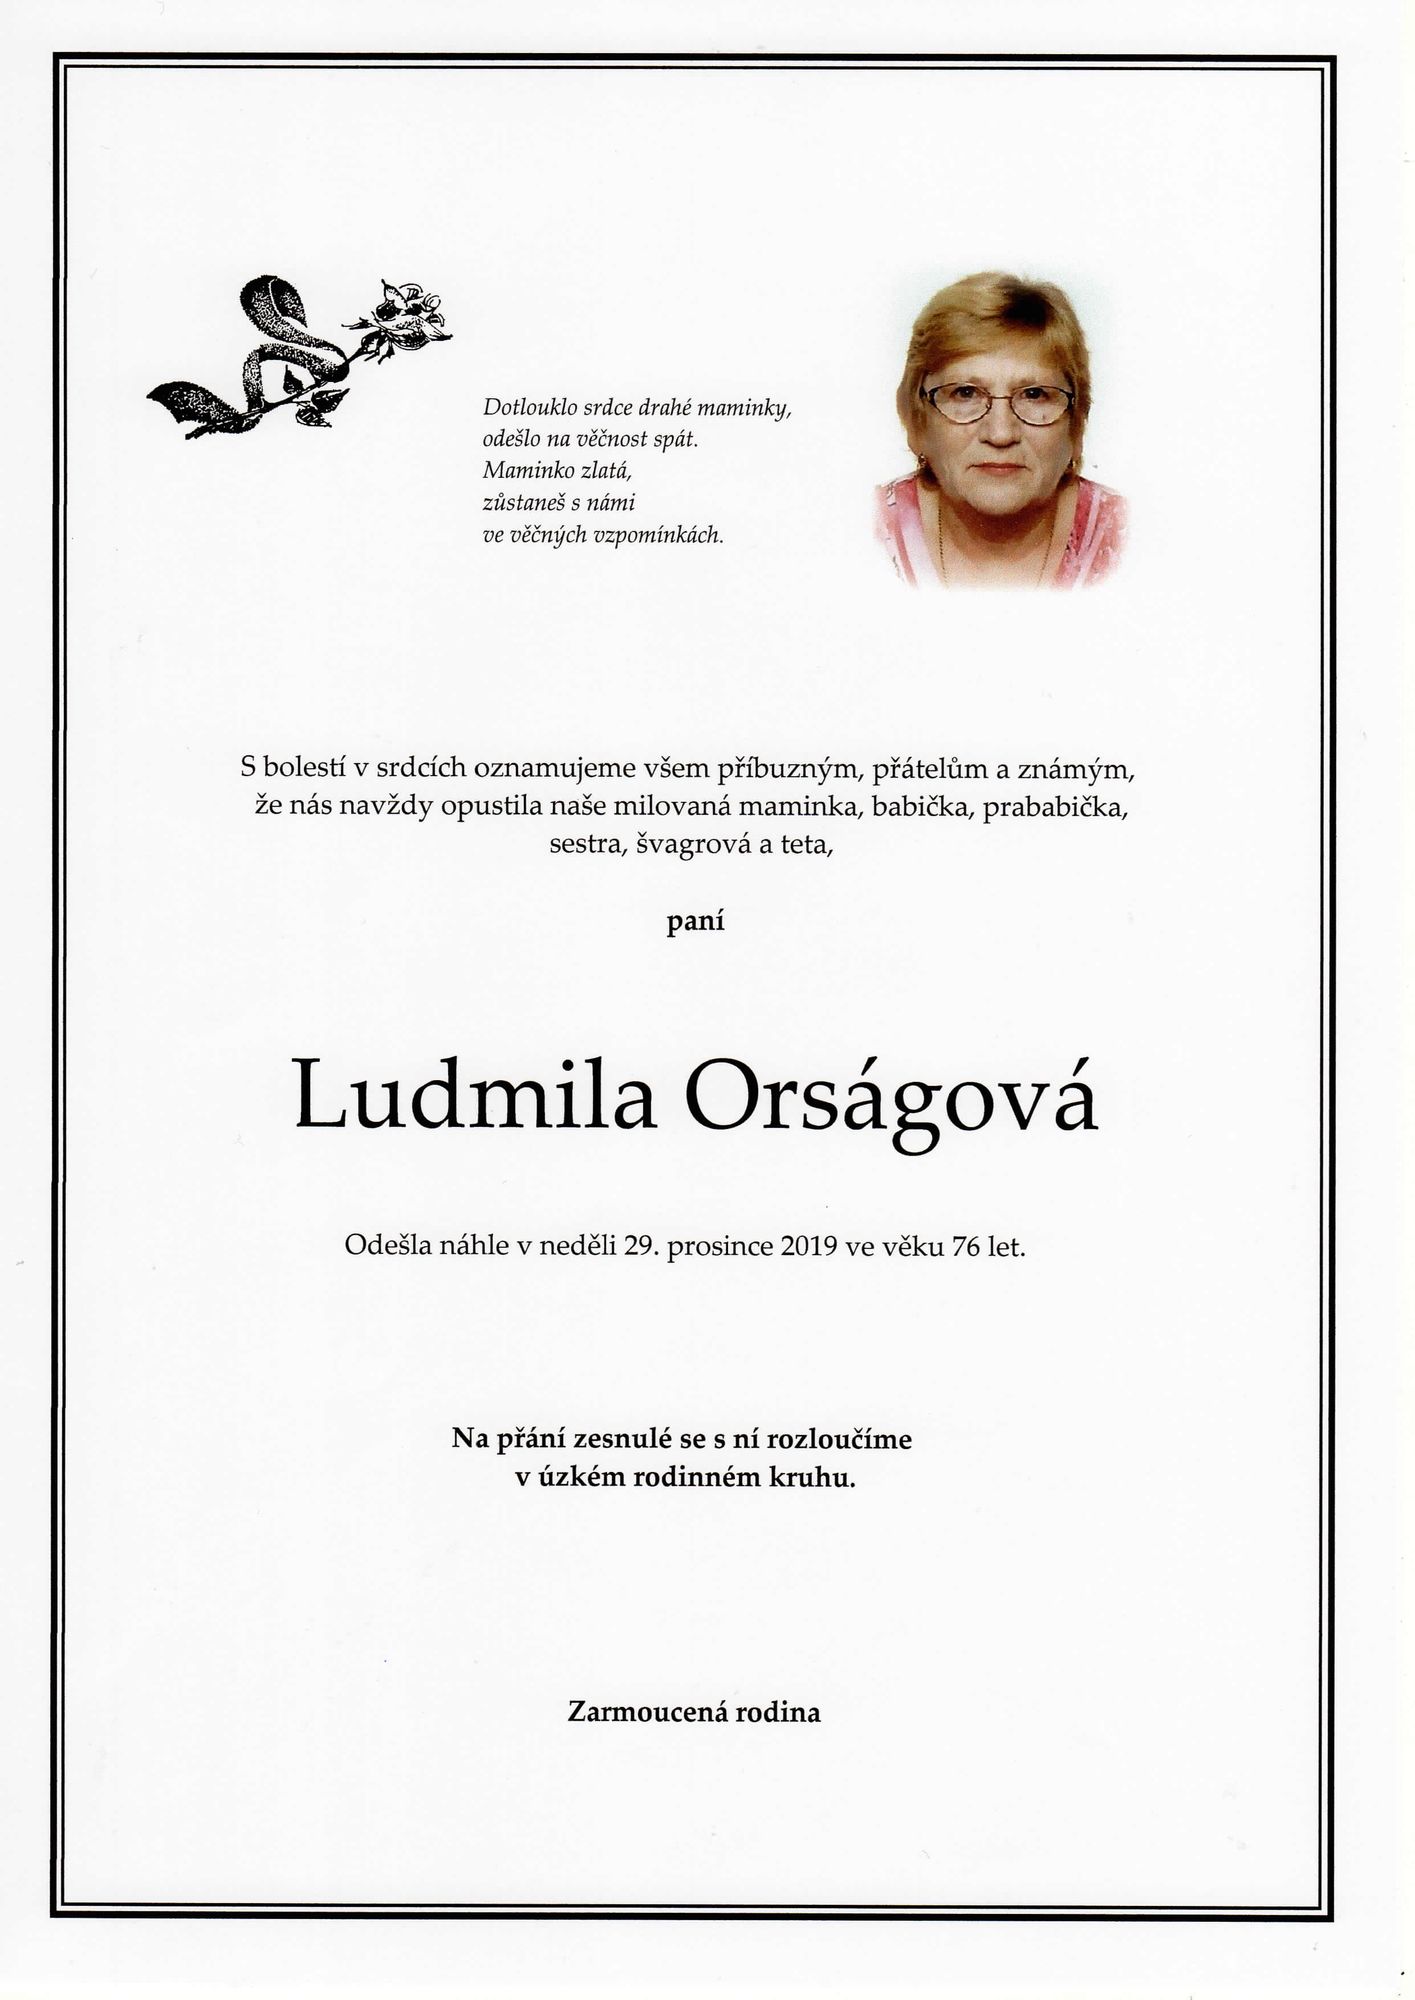 Ludmila Orságová